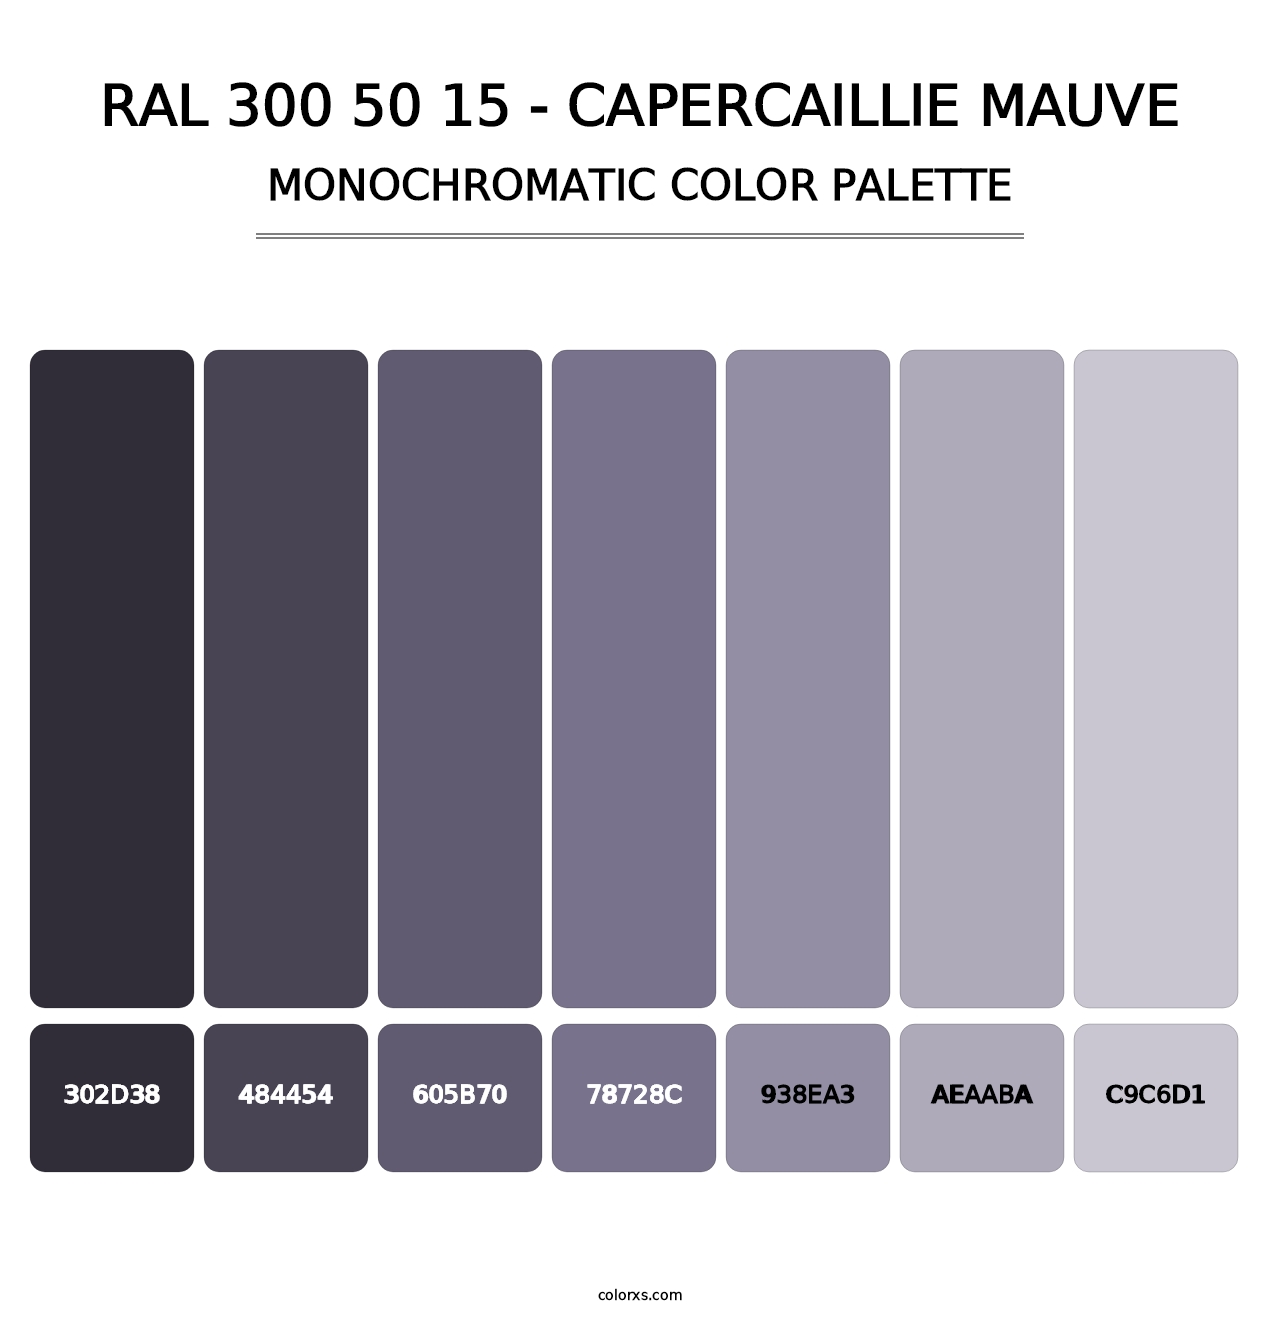 RAL 300 50 15 - Capercaillie Mauve - Monochromatic Color Palette